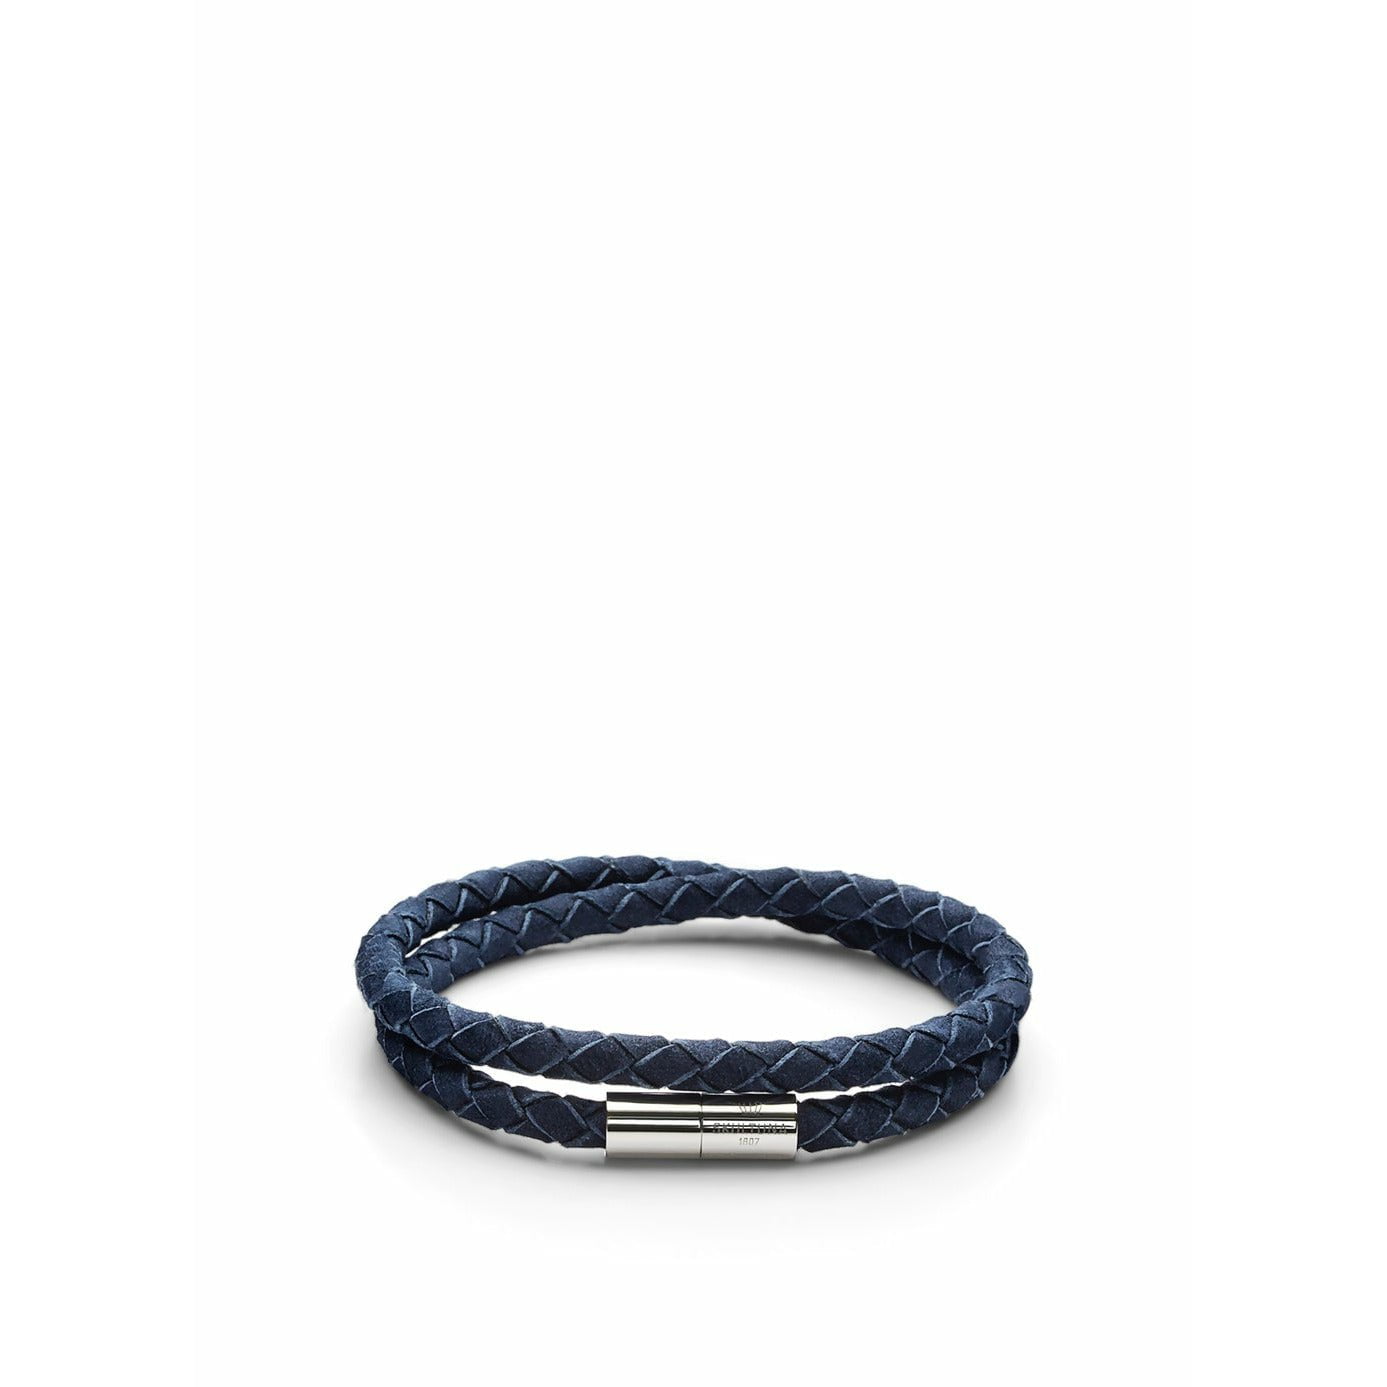 Skultuna De suede armband klein Ø14,5 cm, blauw